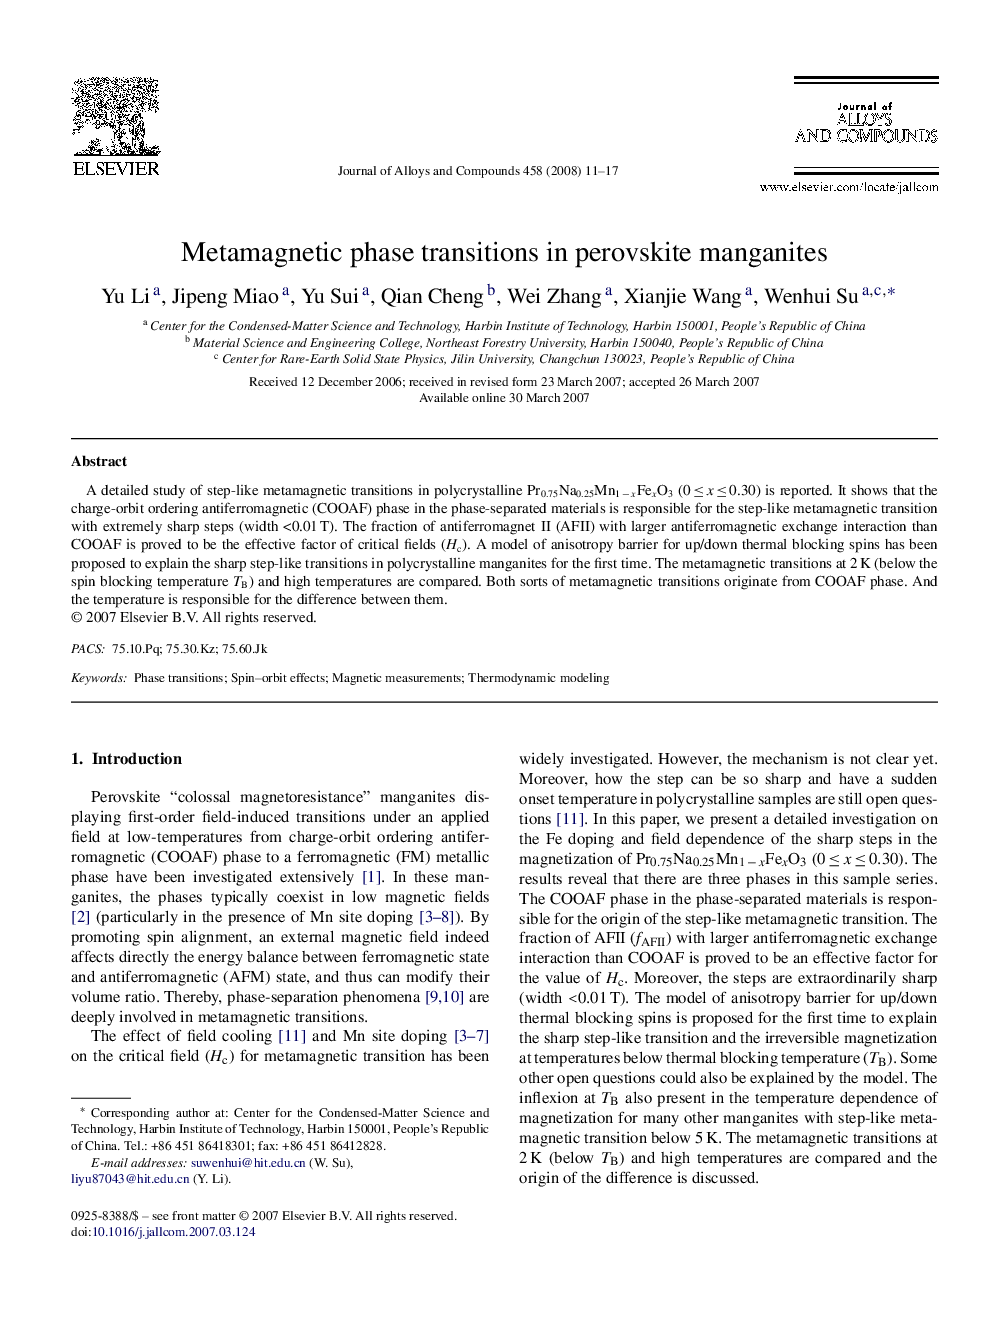 Metamagnetic phase transitions in perovskite manganites